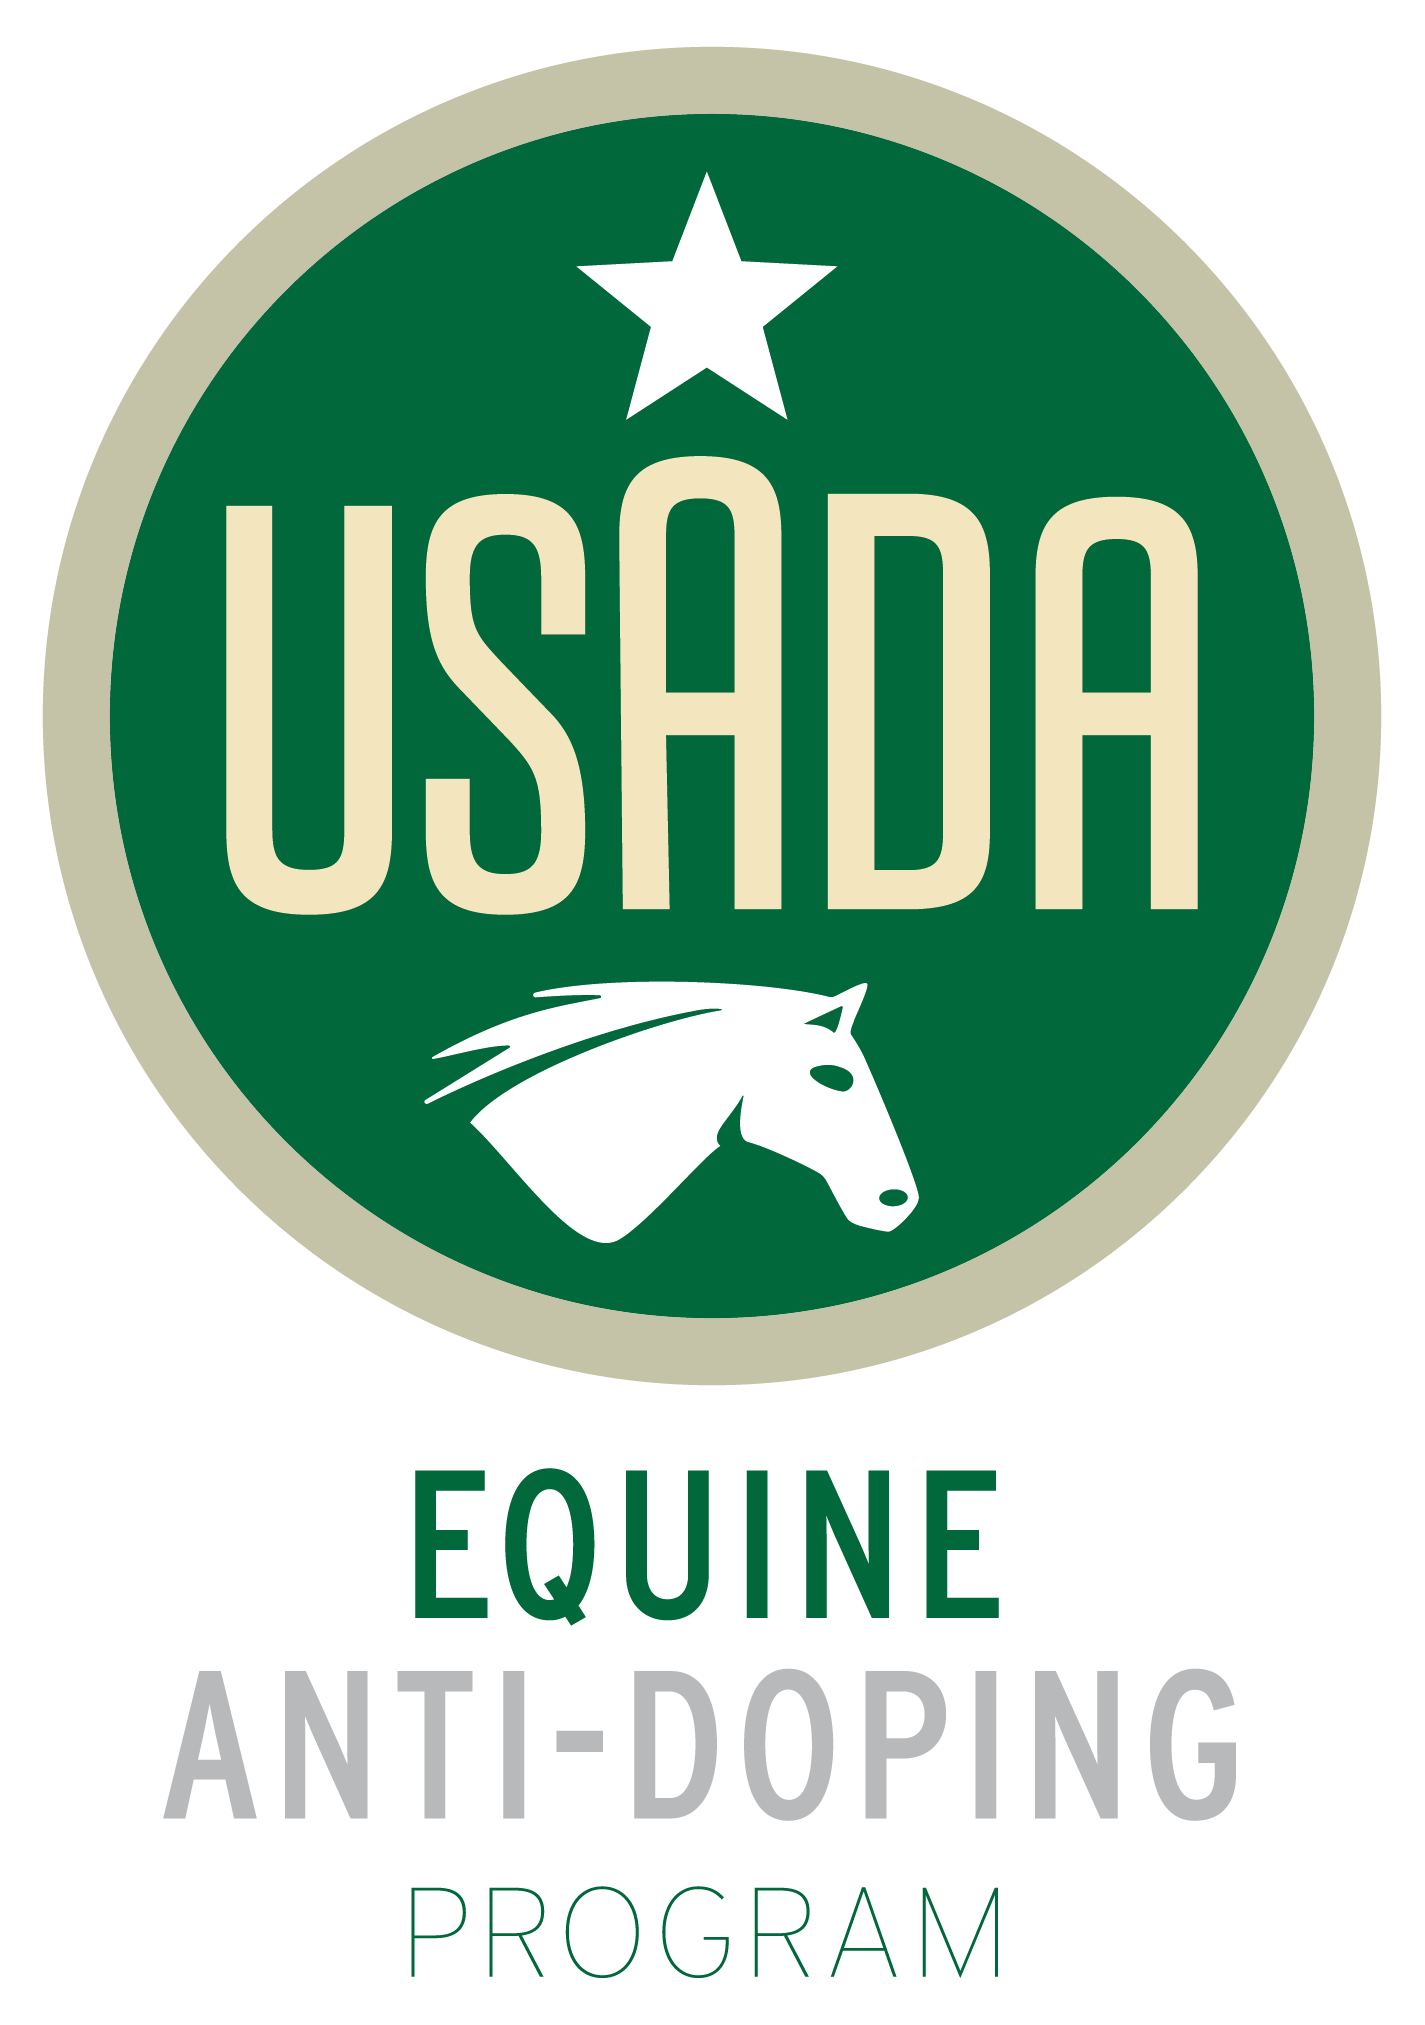 USADA Equine Anti-Doping Program logo.